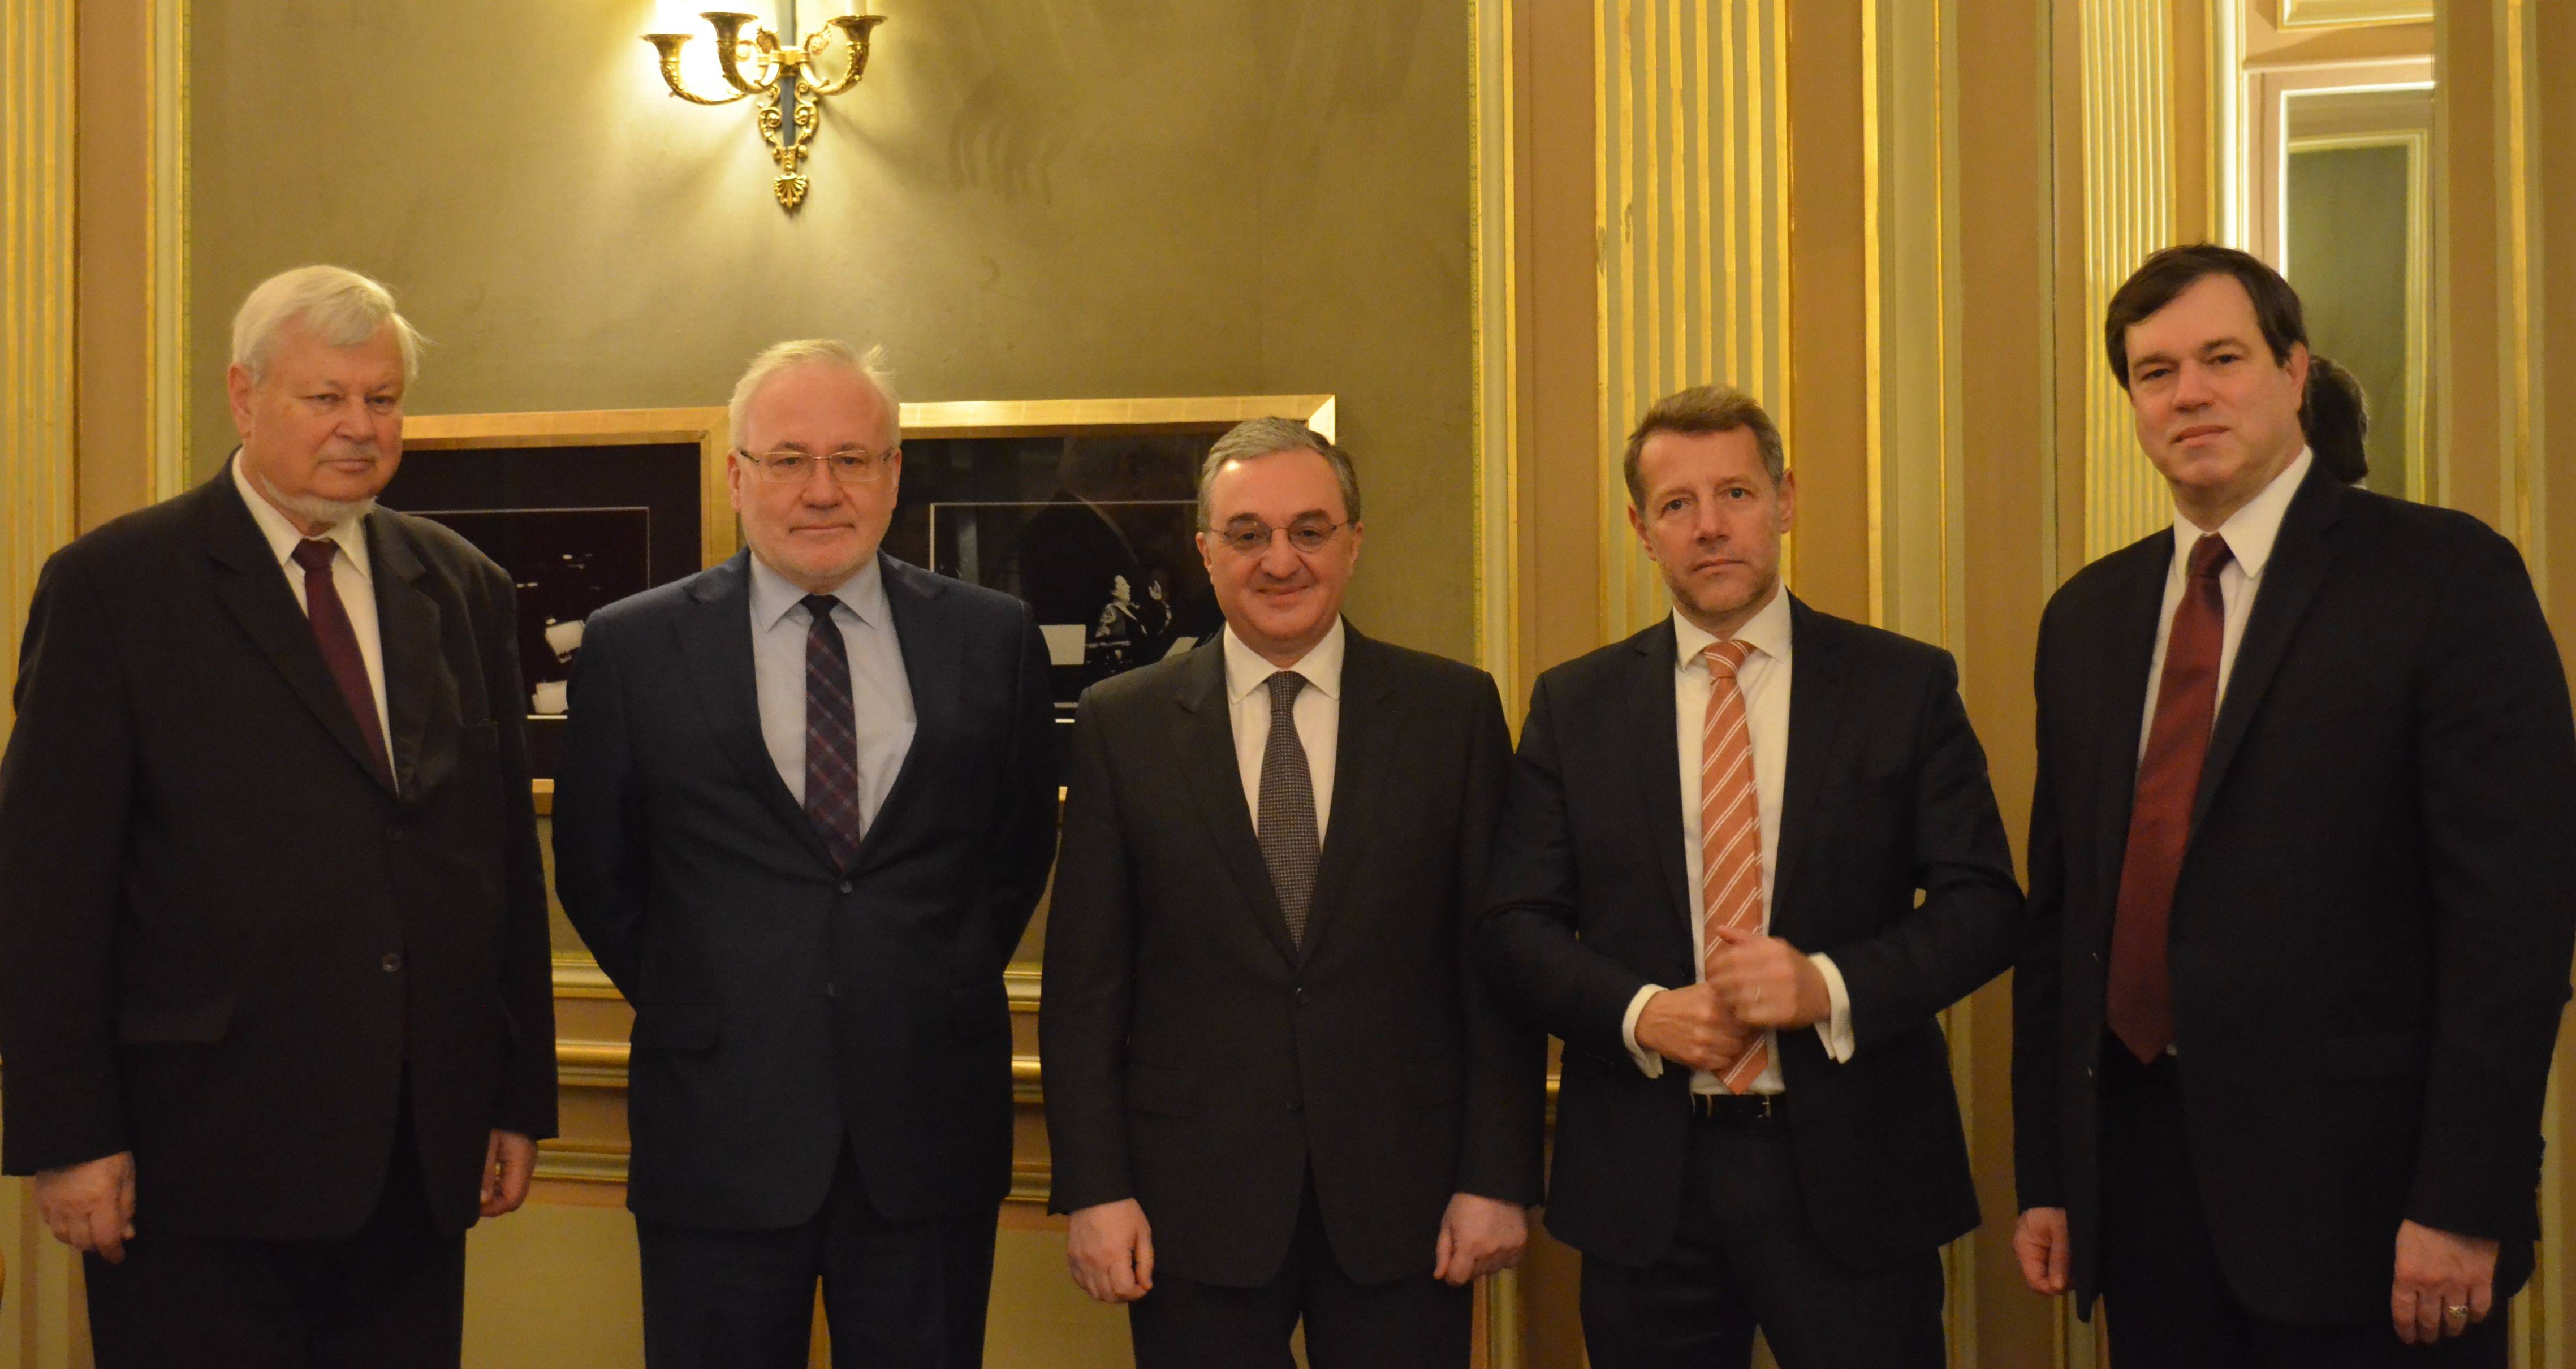 Rencontre entre le Ministre des Affaires étrangères d’Arménie par intérim et les coprésidents du Groupe de Minsk et le Président en exercice de l’OSCE